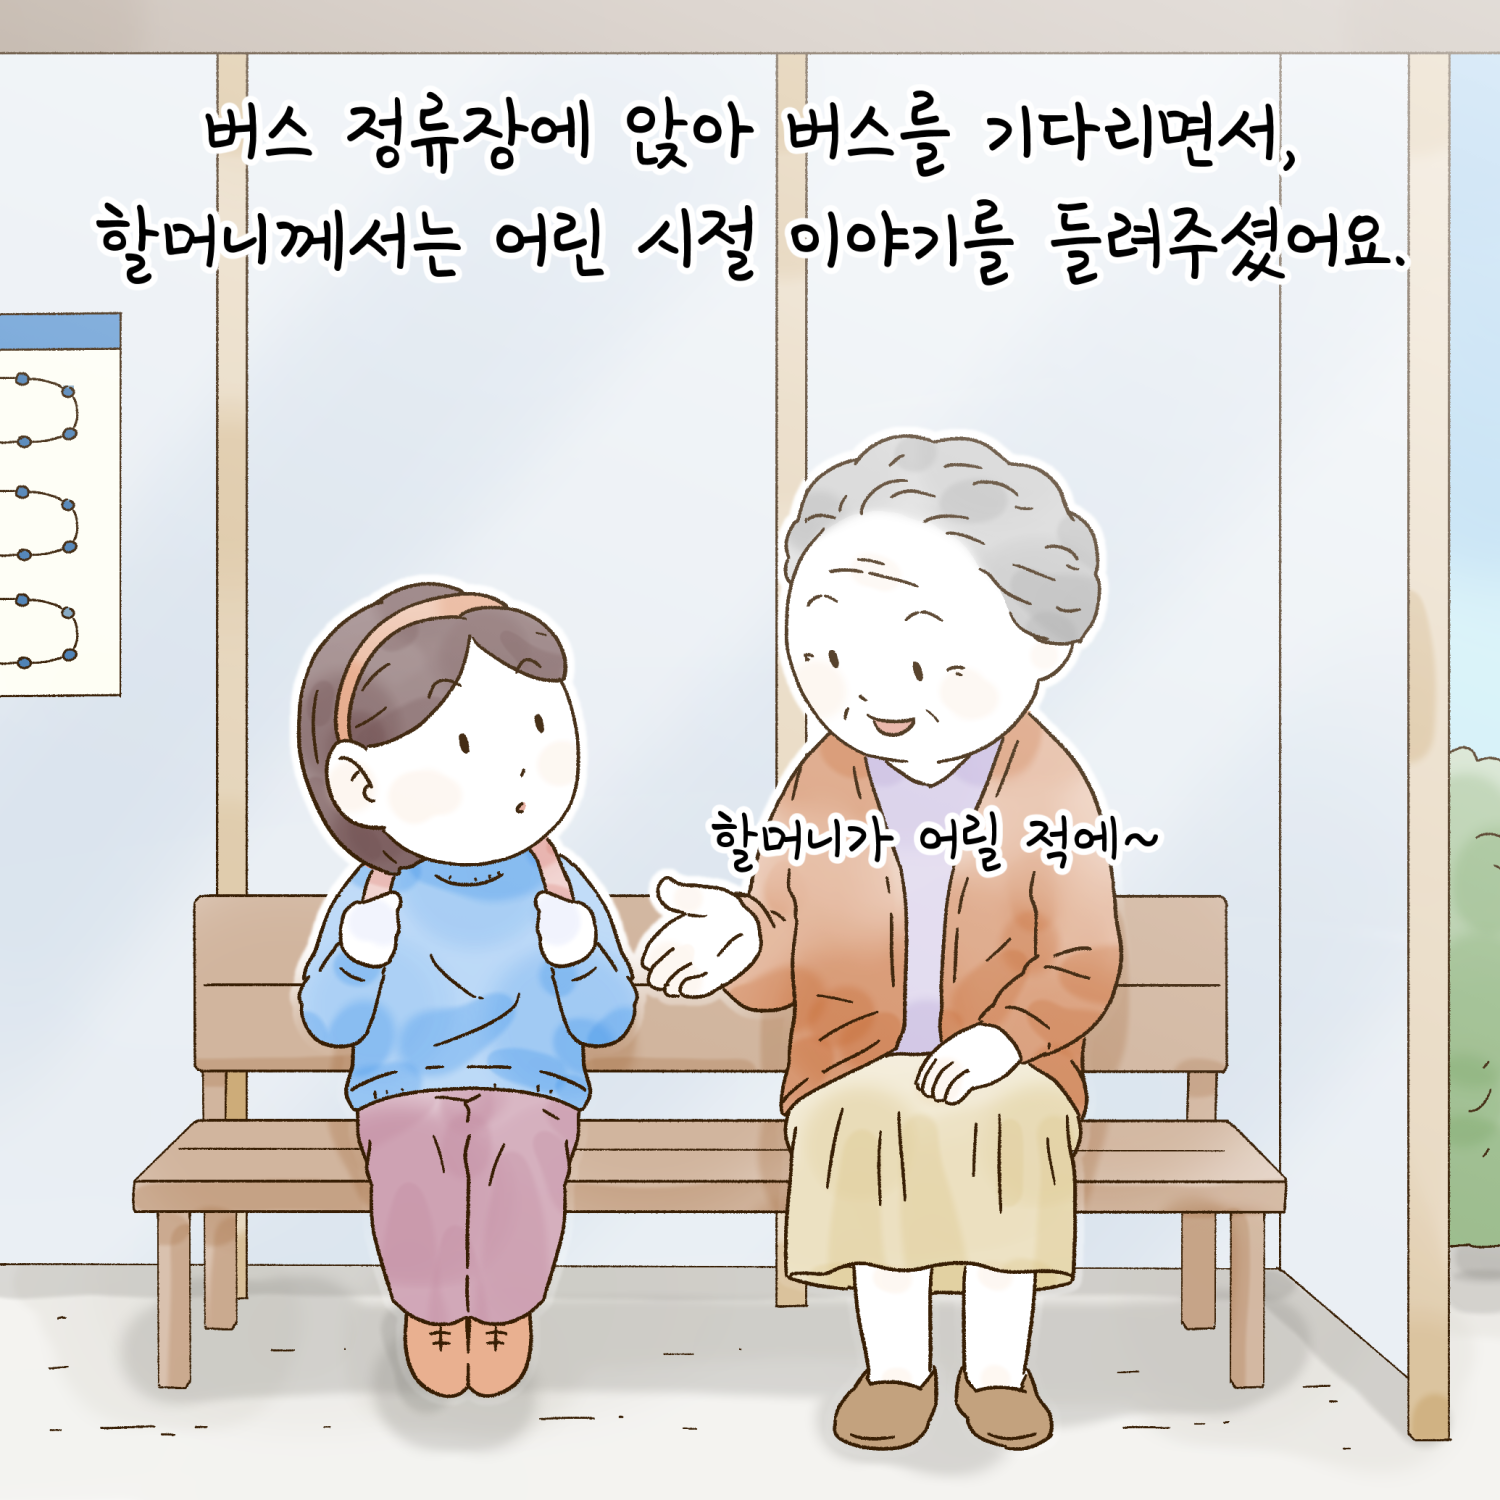 버스 정류장에 앉아 버스를 기다리면서, 할머니께서는 어린 시절 이야기를 들려주셨어요.
할머니가 어릴 적에~